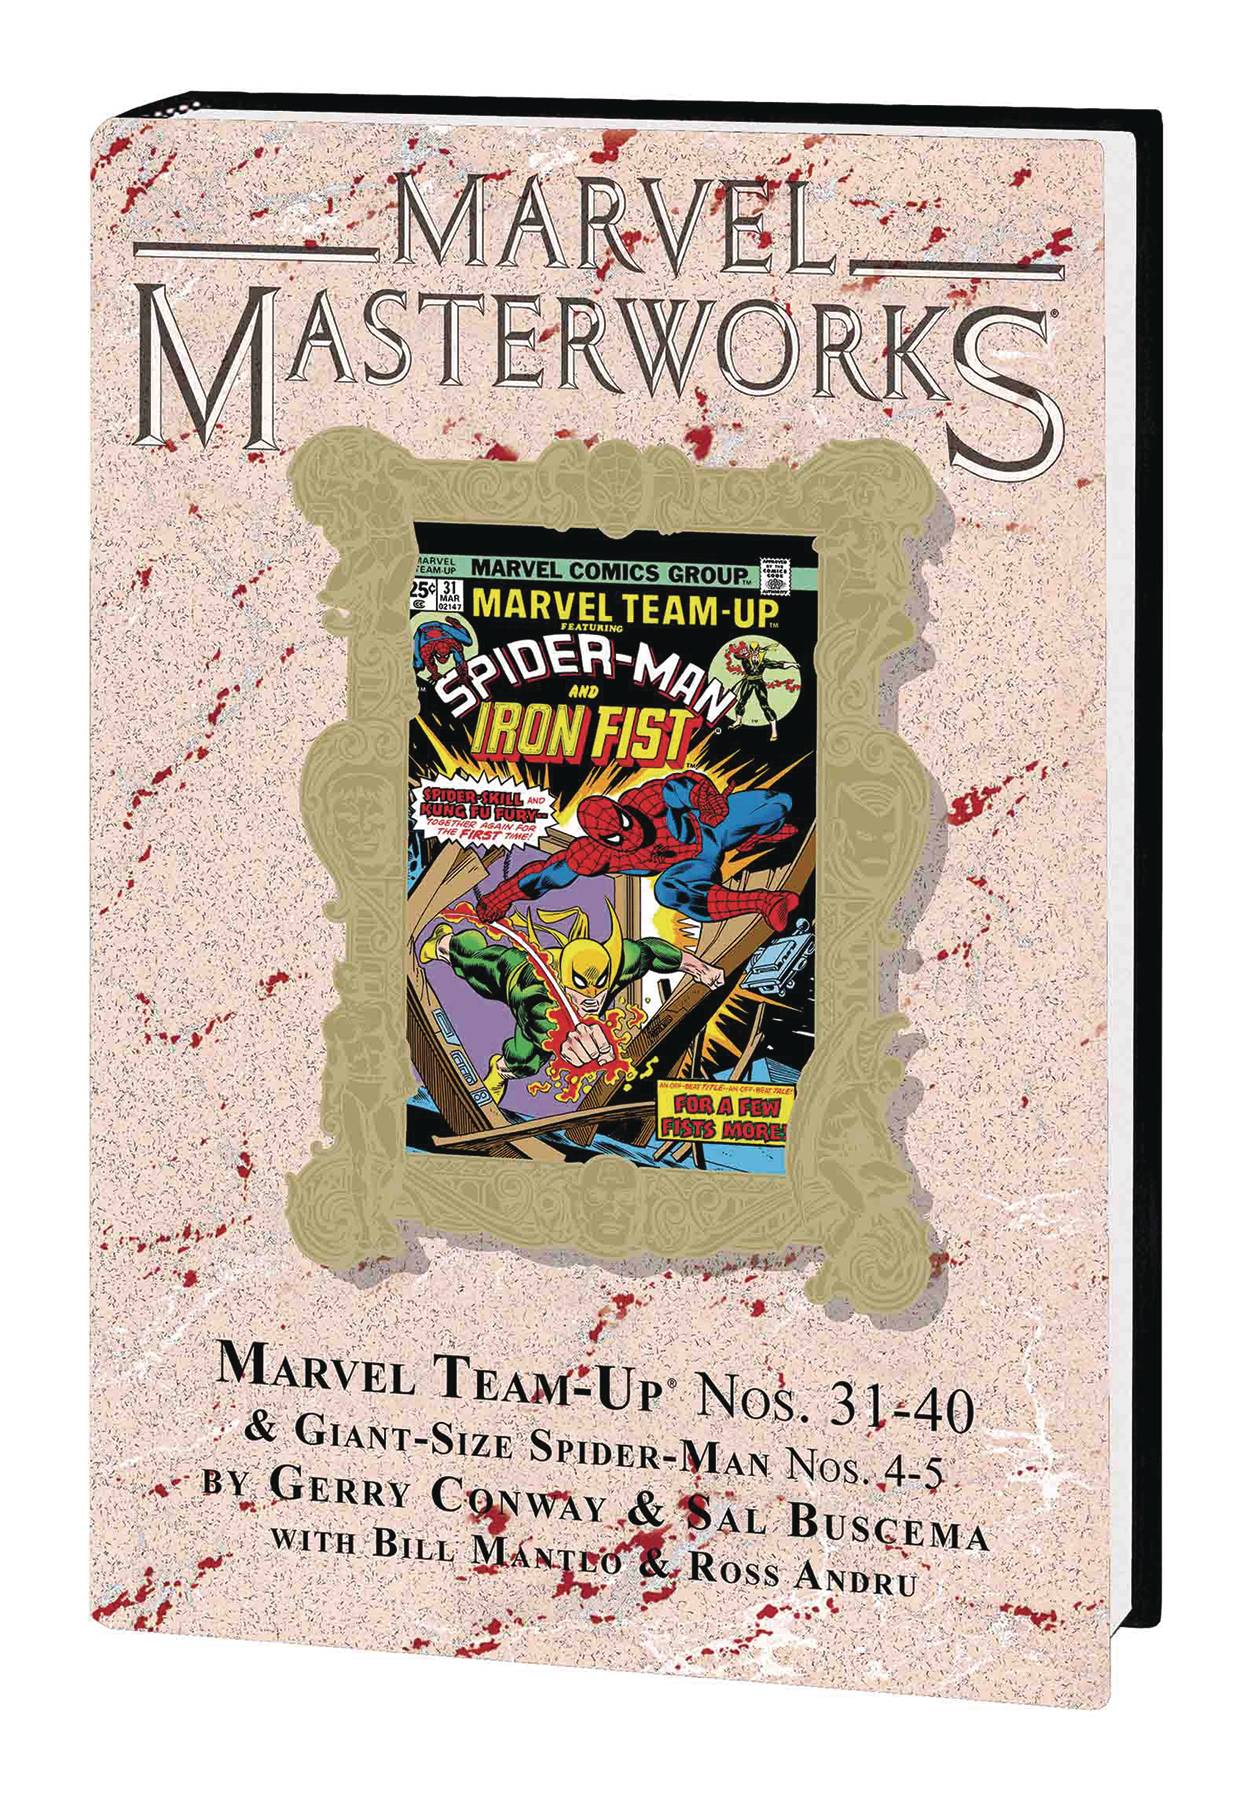 Marvel Masterworks Marvel Team-Up Hardcover Volume 4 Direct Market Edition 269